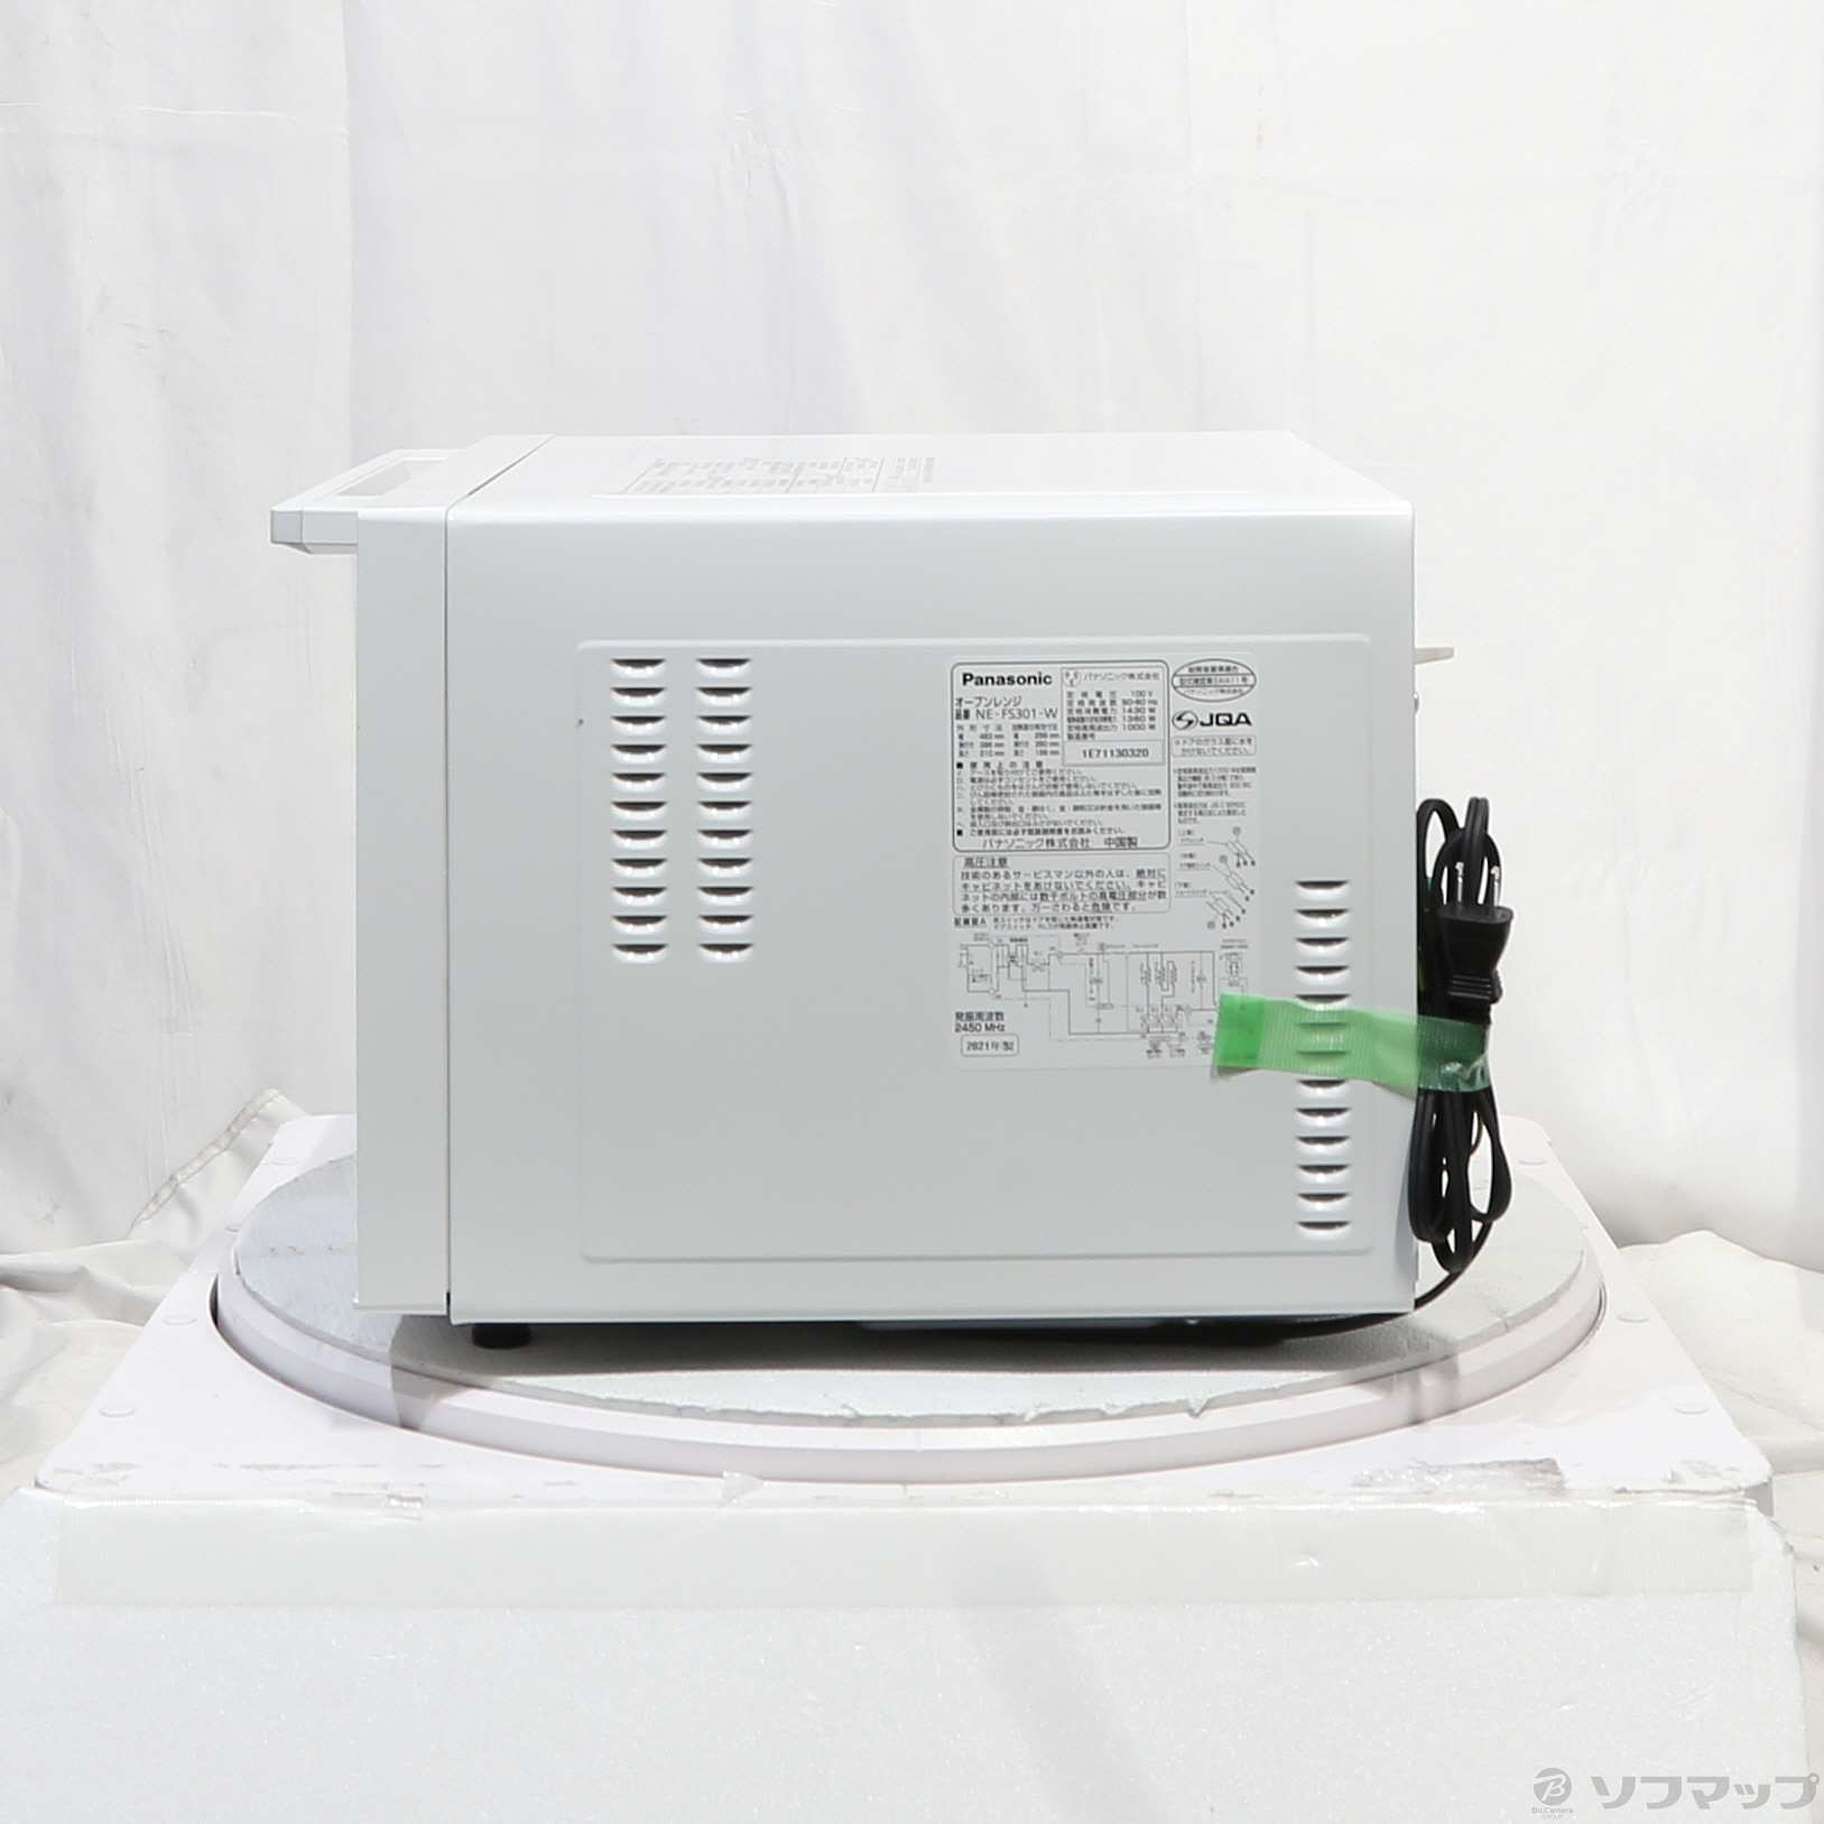 パナソニック NE-FS301-W ホワイト オーブンレンジ 23L 【新品】